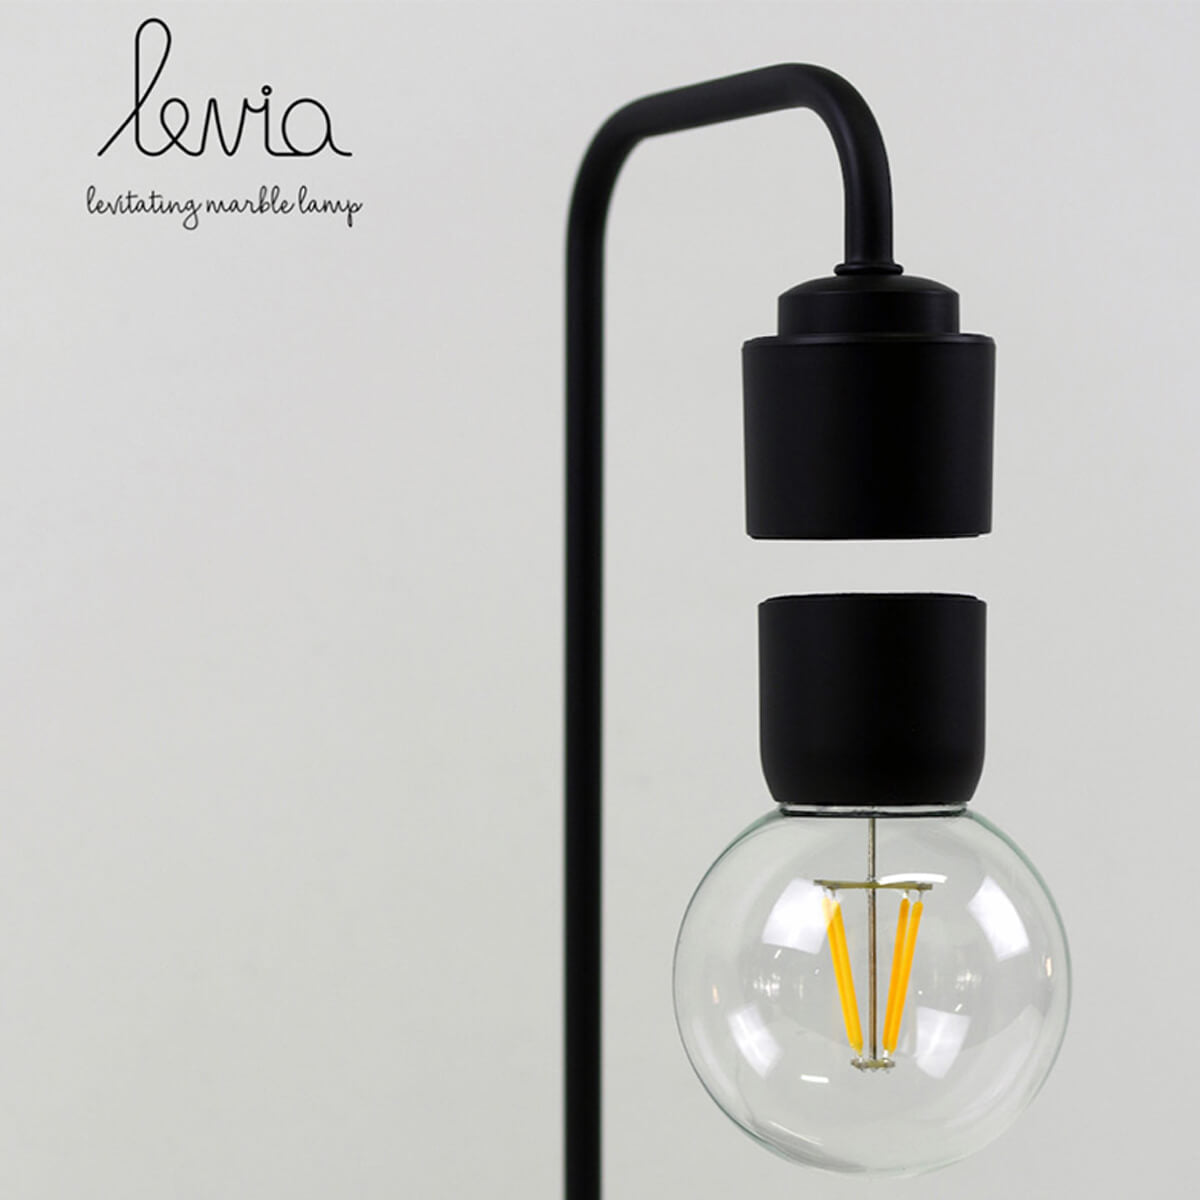 Levia lampada LED a levitazione marmo black